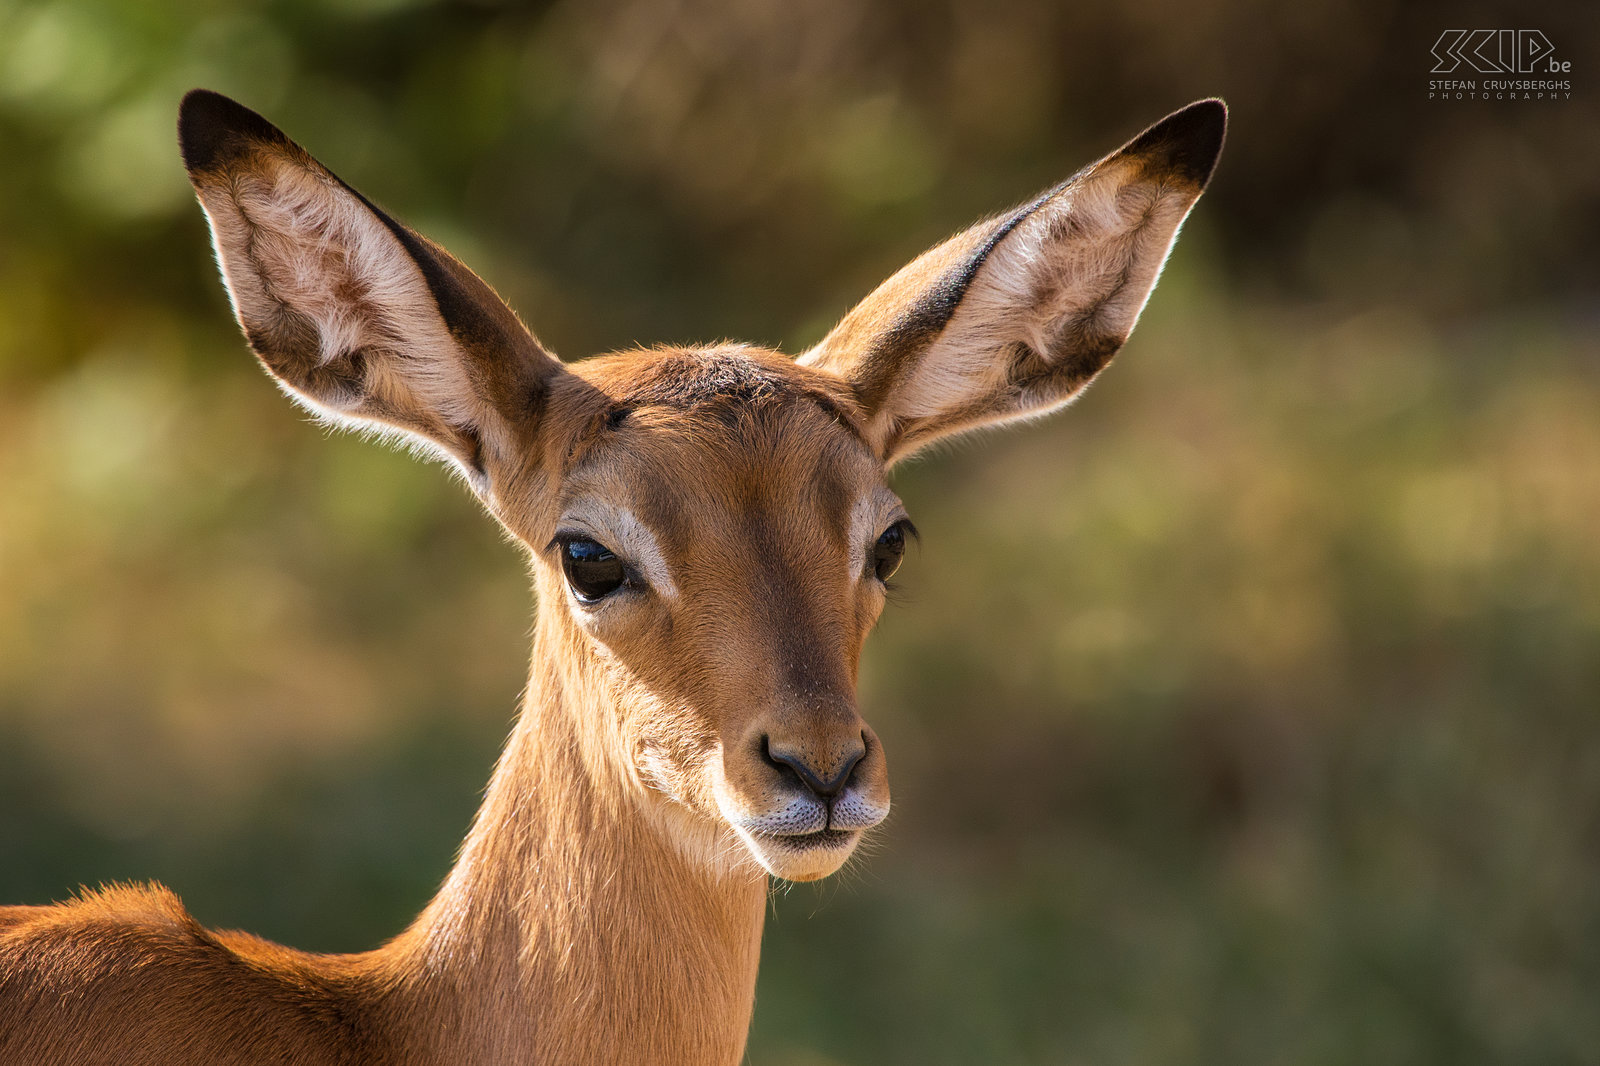 Samburu - Impala Close-up foto van een vrouwelijke impala. Stefan Cruysberghs